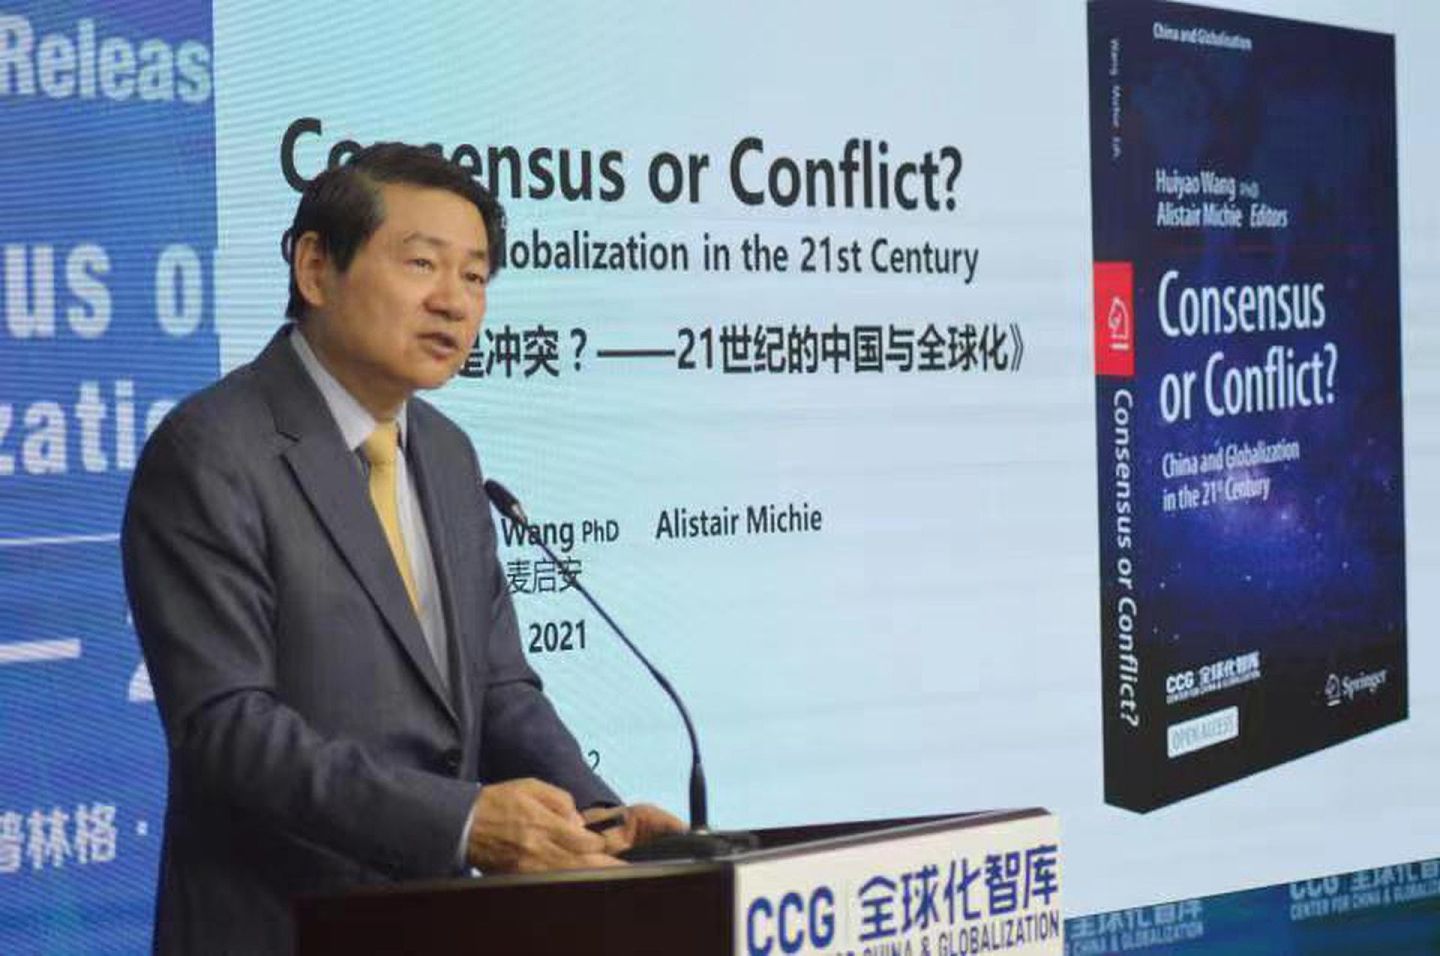 全球化智库（CCG）与施普林格·自然出版集团（Springer Nature）于2021年10月11日在北京联合举办的《共识还是冲突？——21世纪的中国与全球化》新书发布会。作为本书的主编之一，CCG理事长王辉耀博士在会上对这本书进行介绍。（CCG供图）